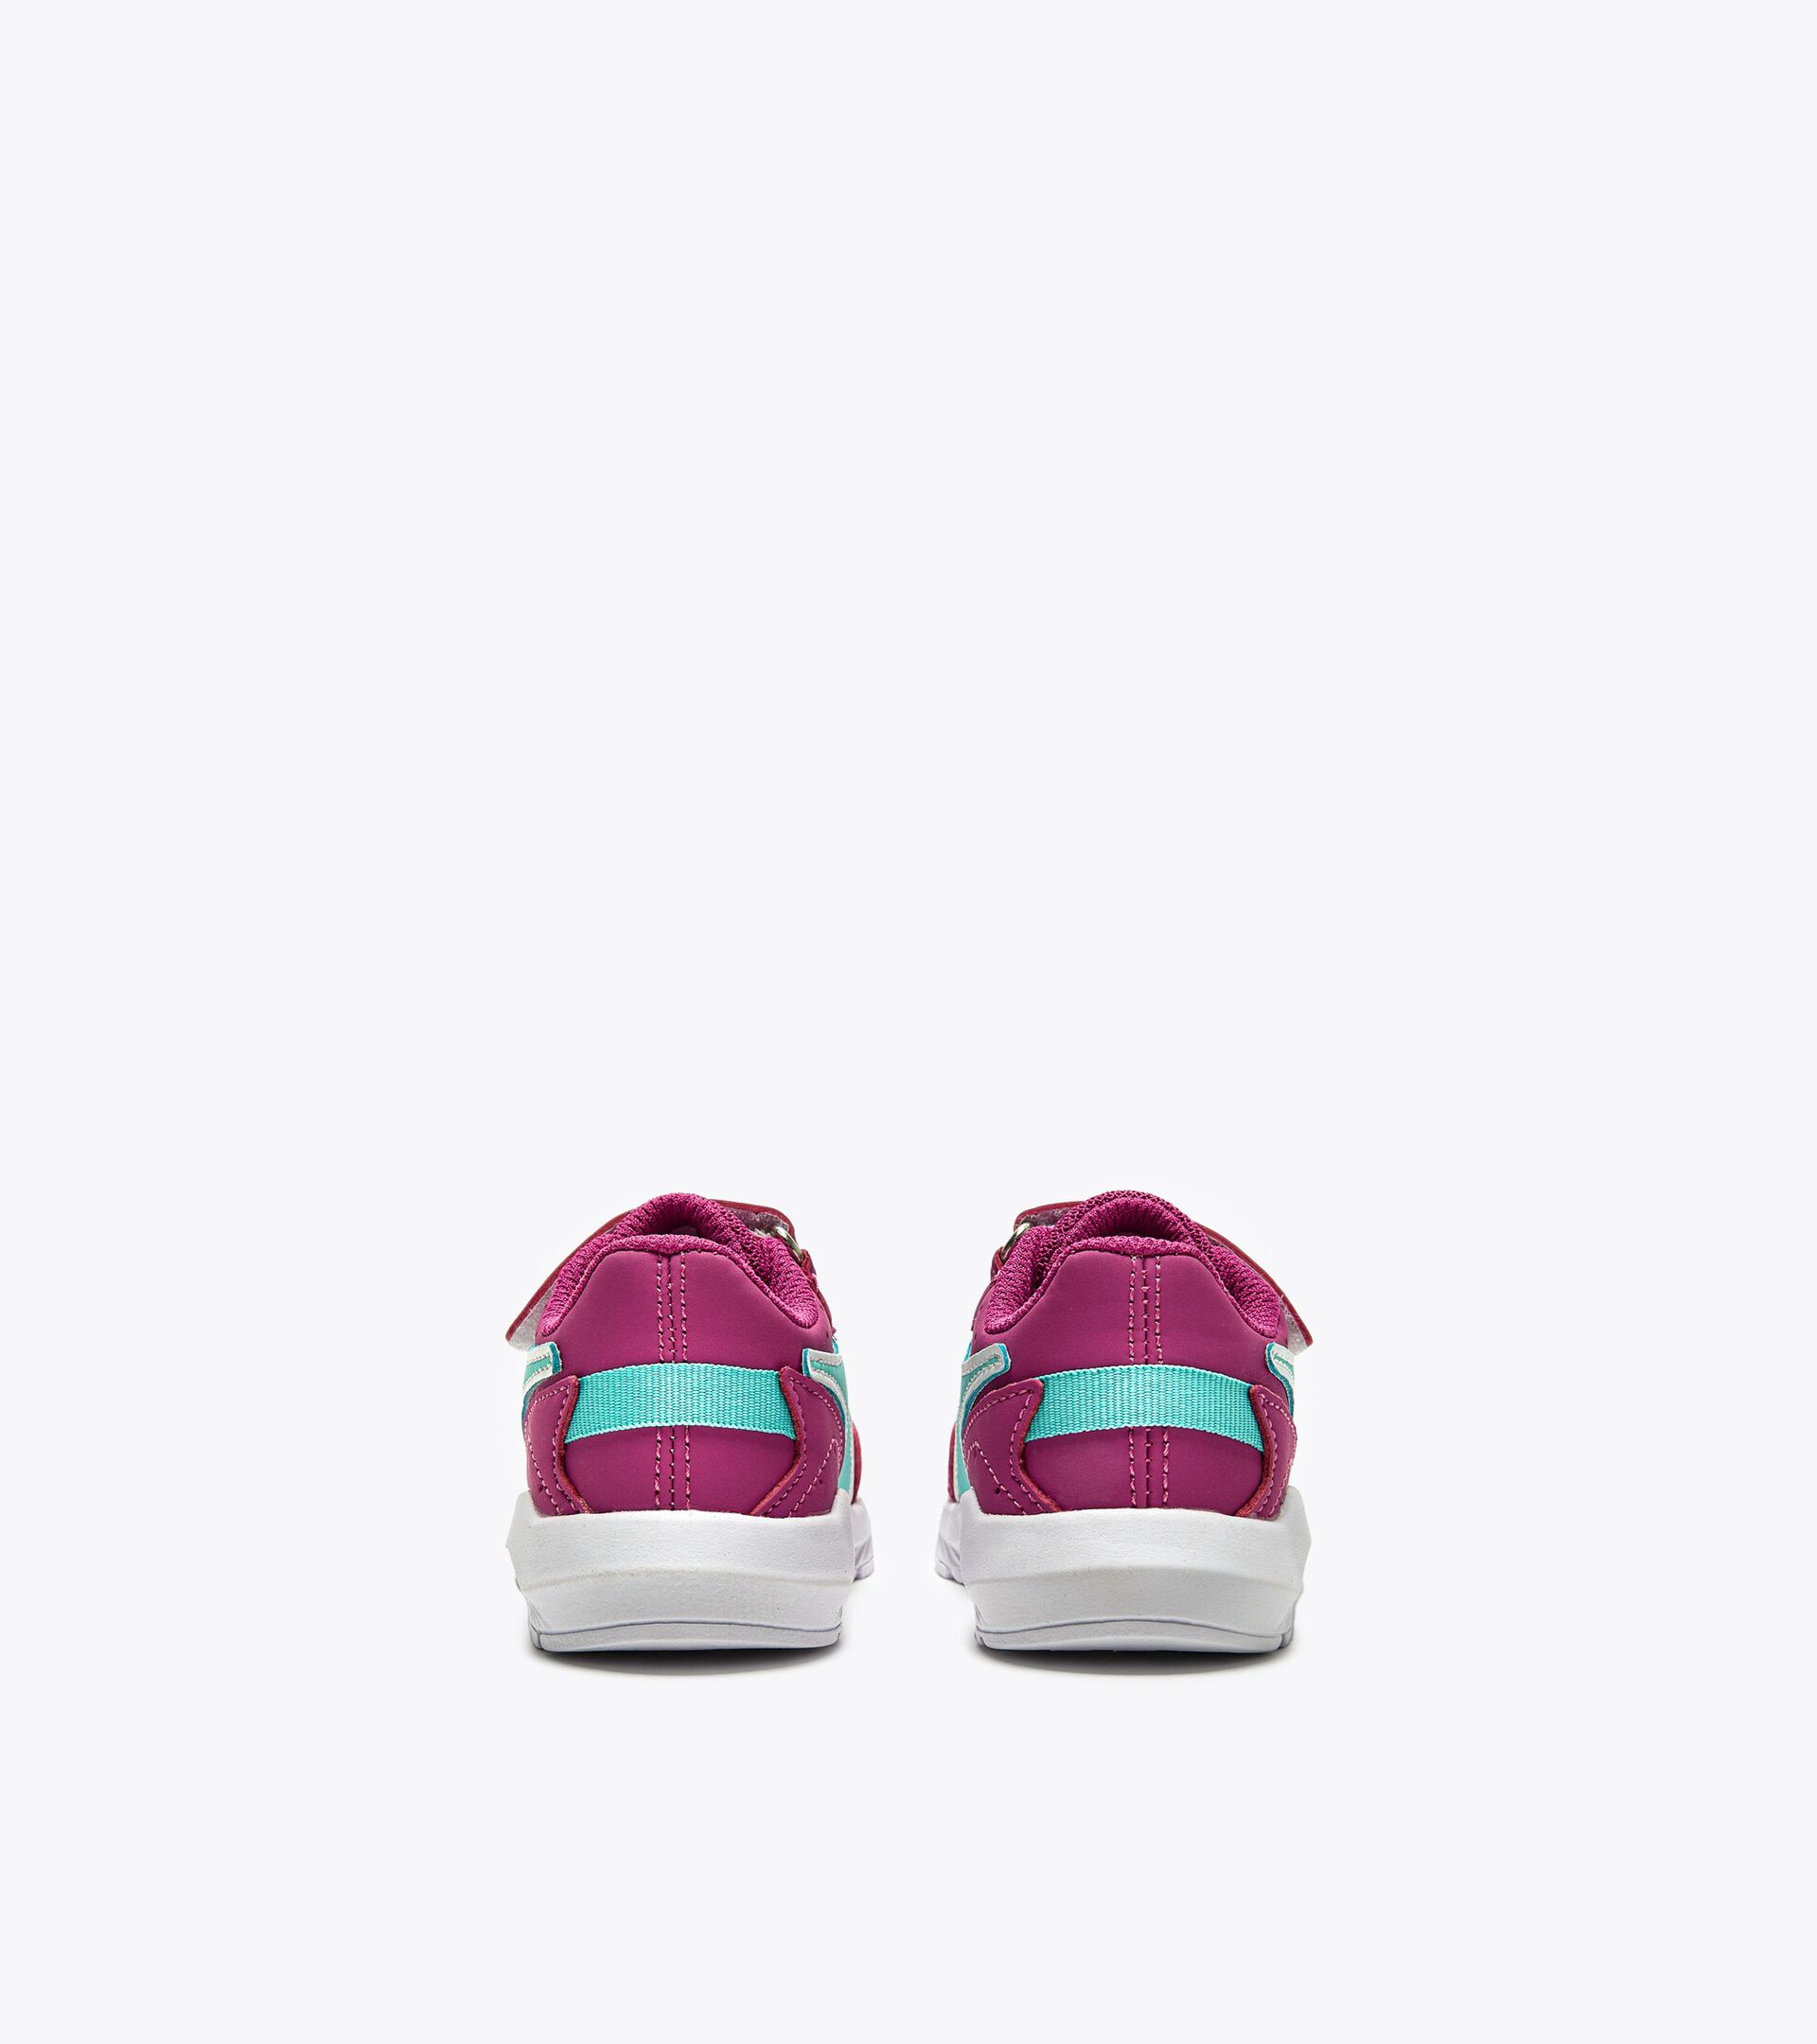 Sporty shoe for toddlers FALCON 3 SL I ROSE VIOLET/ARUBA BLUE - Diadora